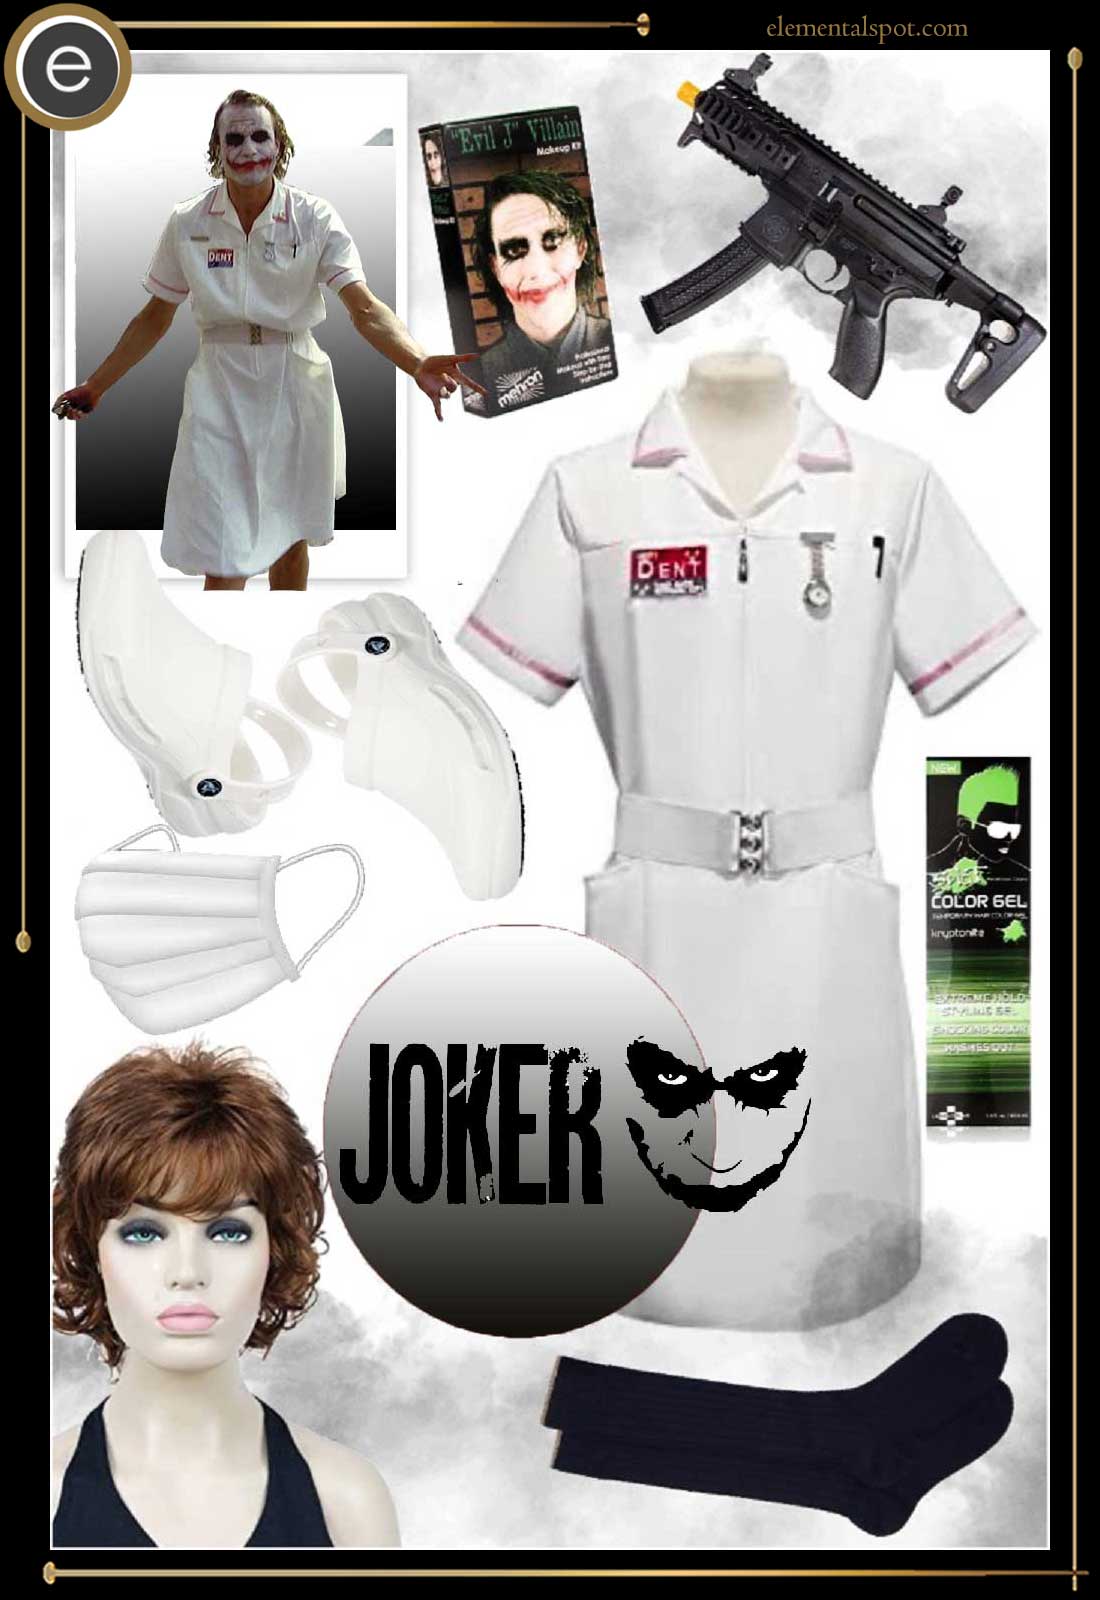 Dress Up Like Joker Nurse from The Dark Knight - Elemental Spot